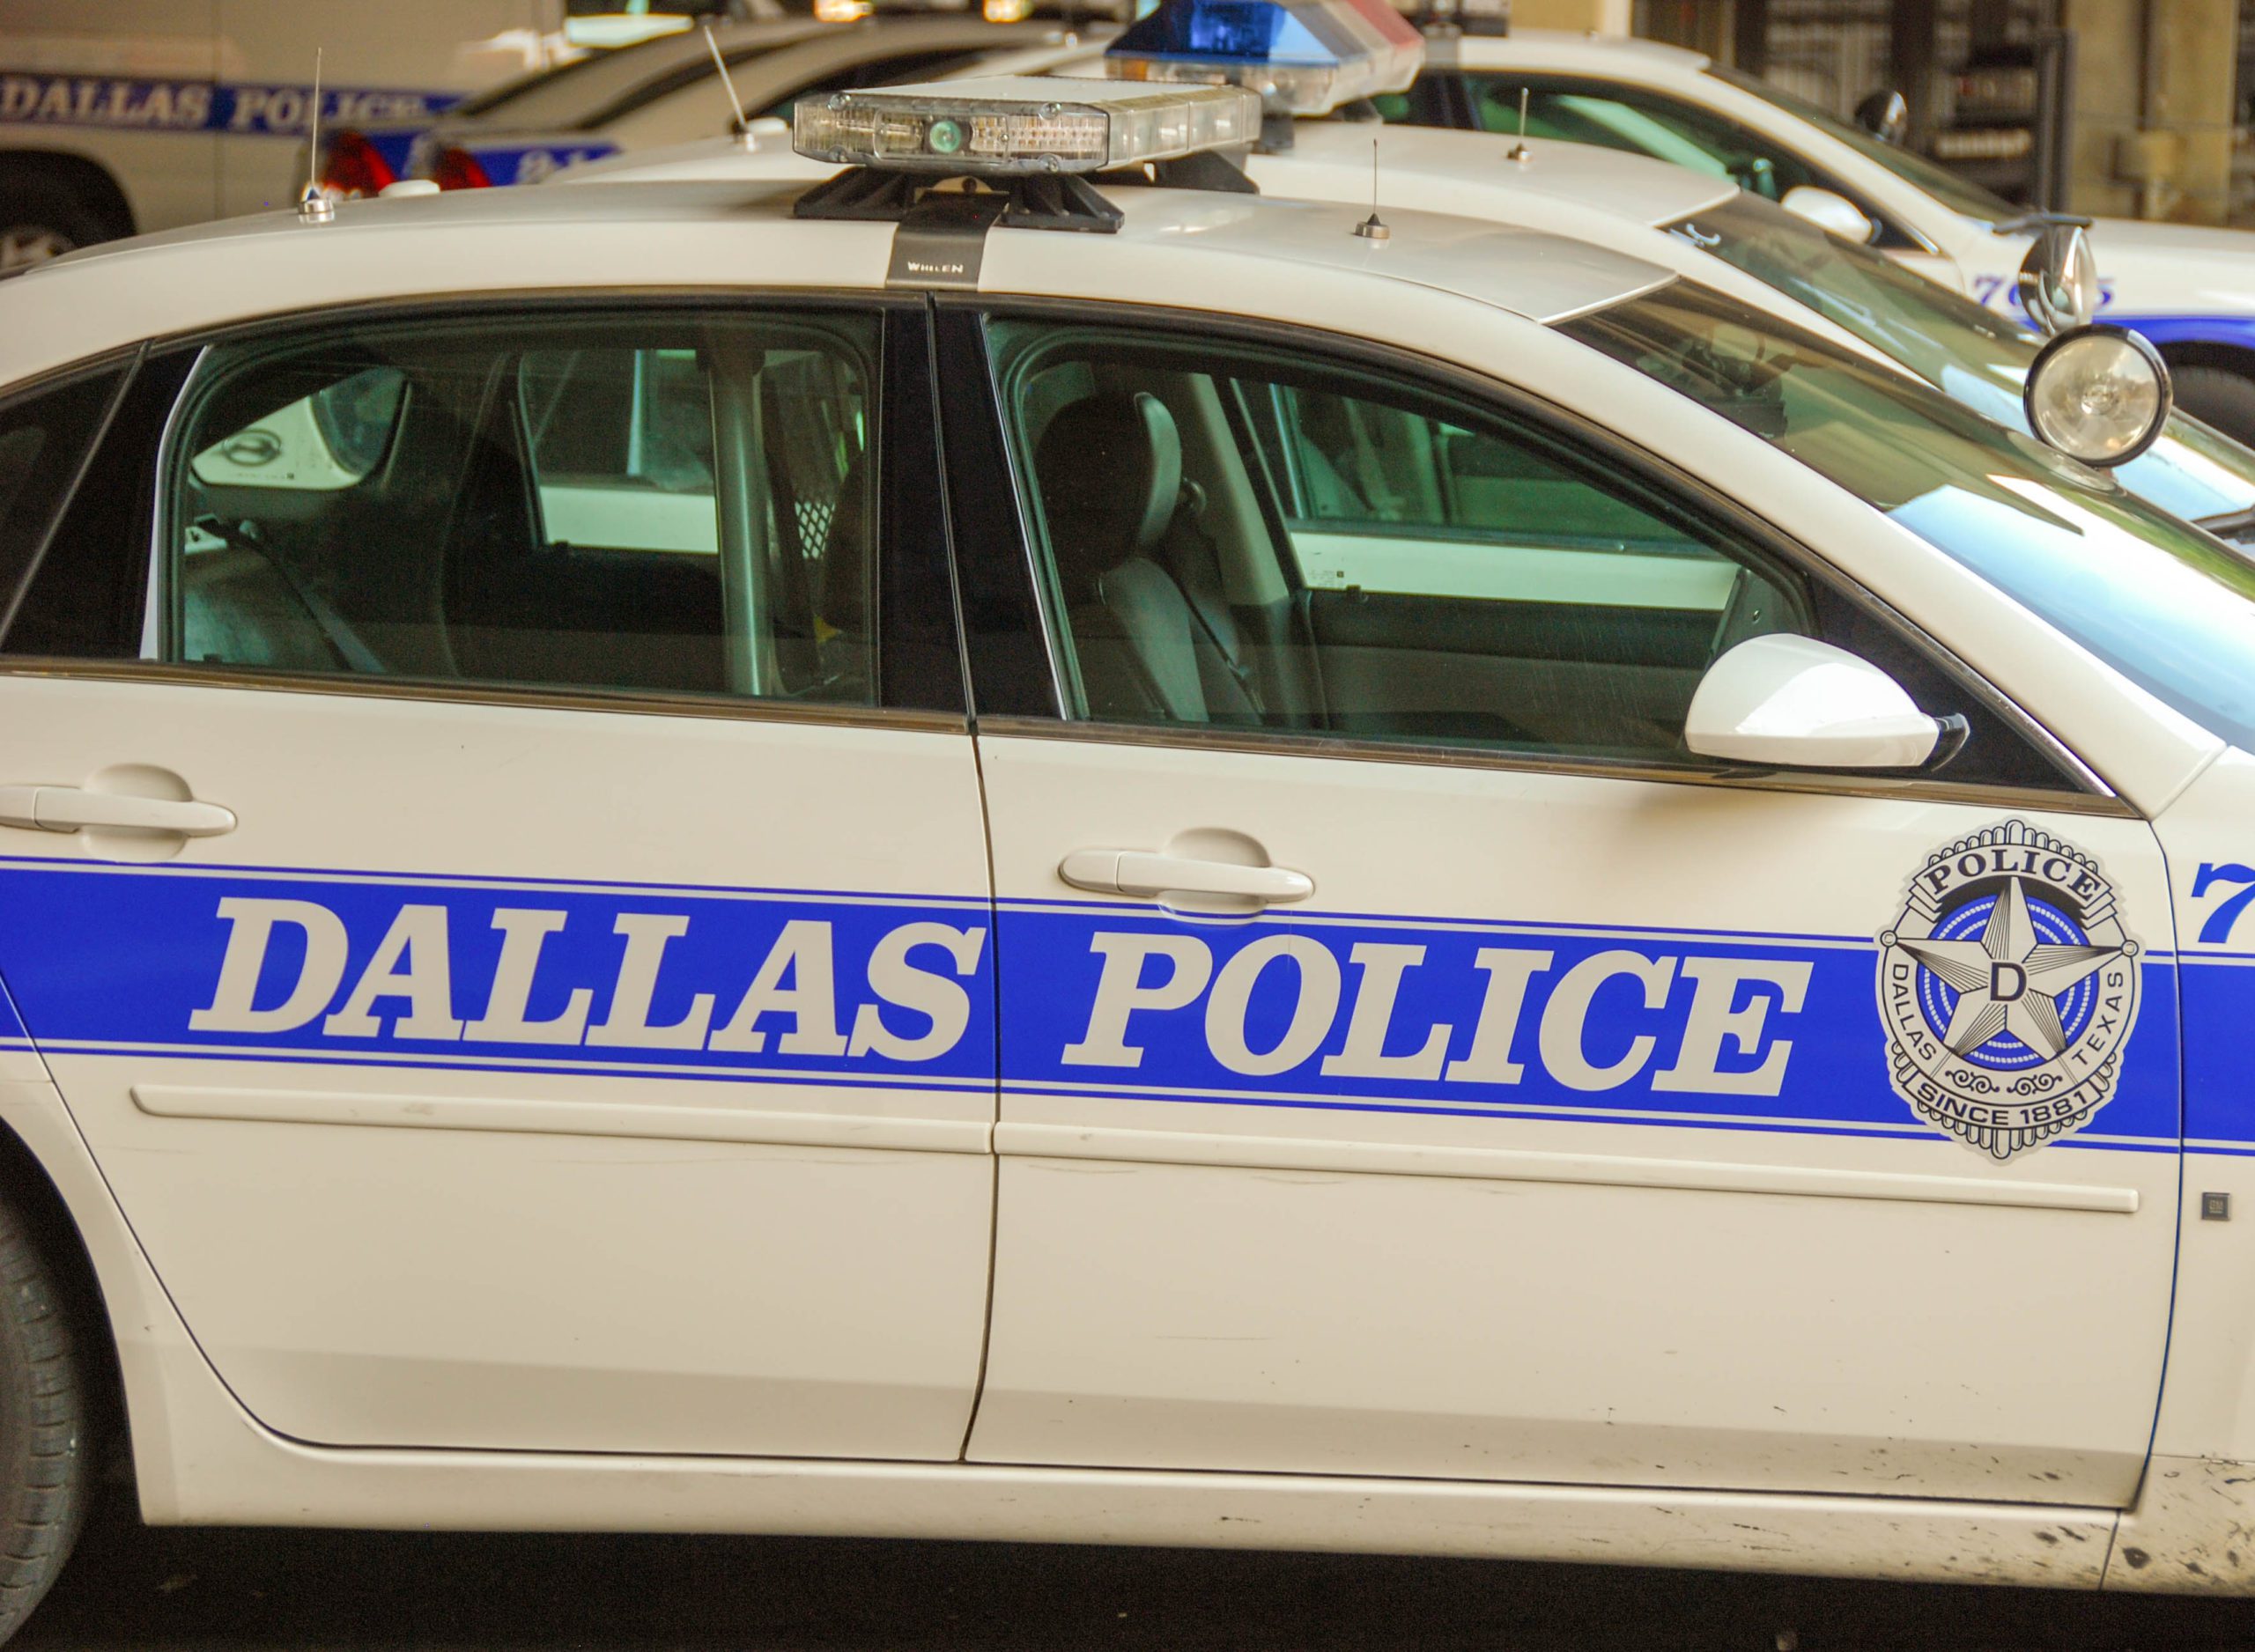 Dallas Police Department patrol car